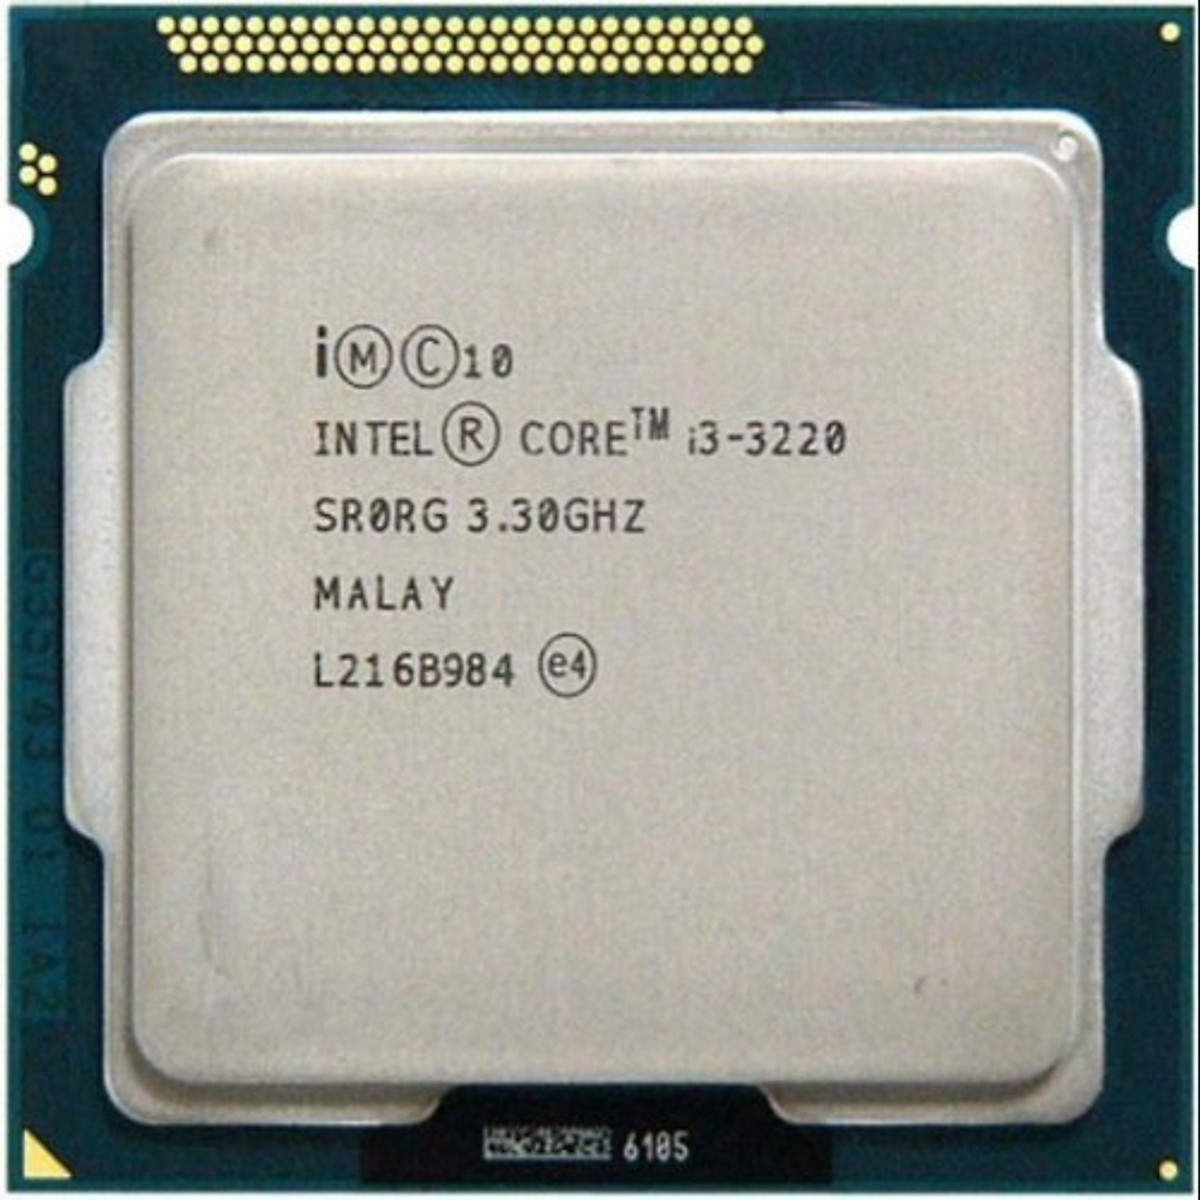 Bộ Vi Xử Lý CPU Intel Core I3-3220 (3.30GHz, 3M, 2 Cores 4 Threads, Socket LGA1155, Thế hệ 3) Tray chưa có Fan - Hàng Chính Hãng